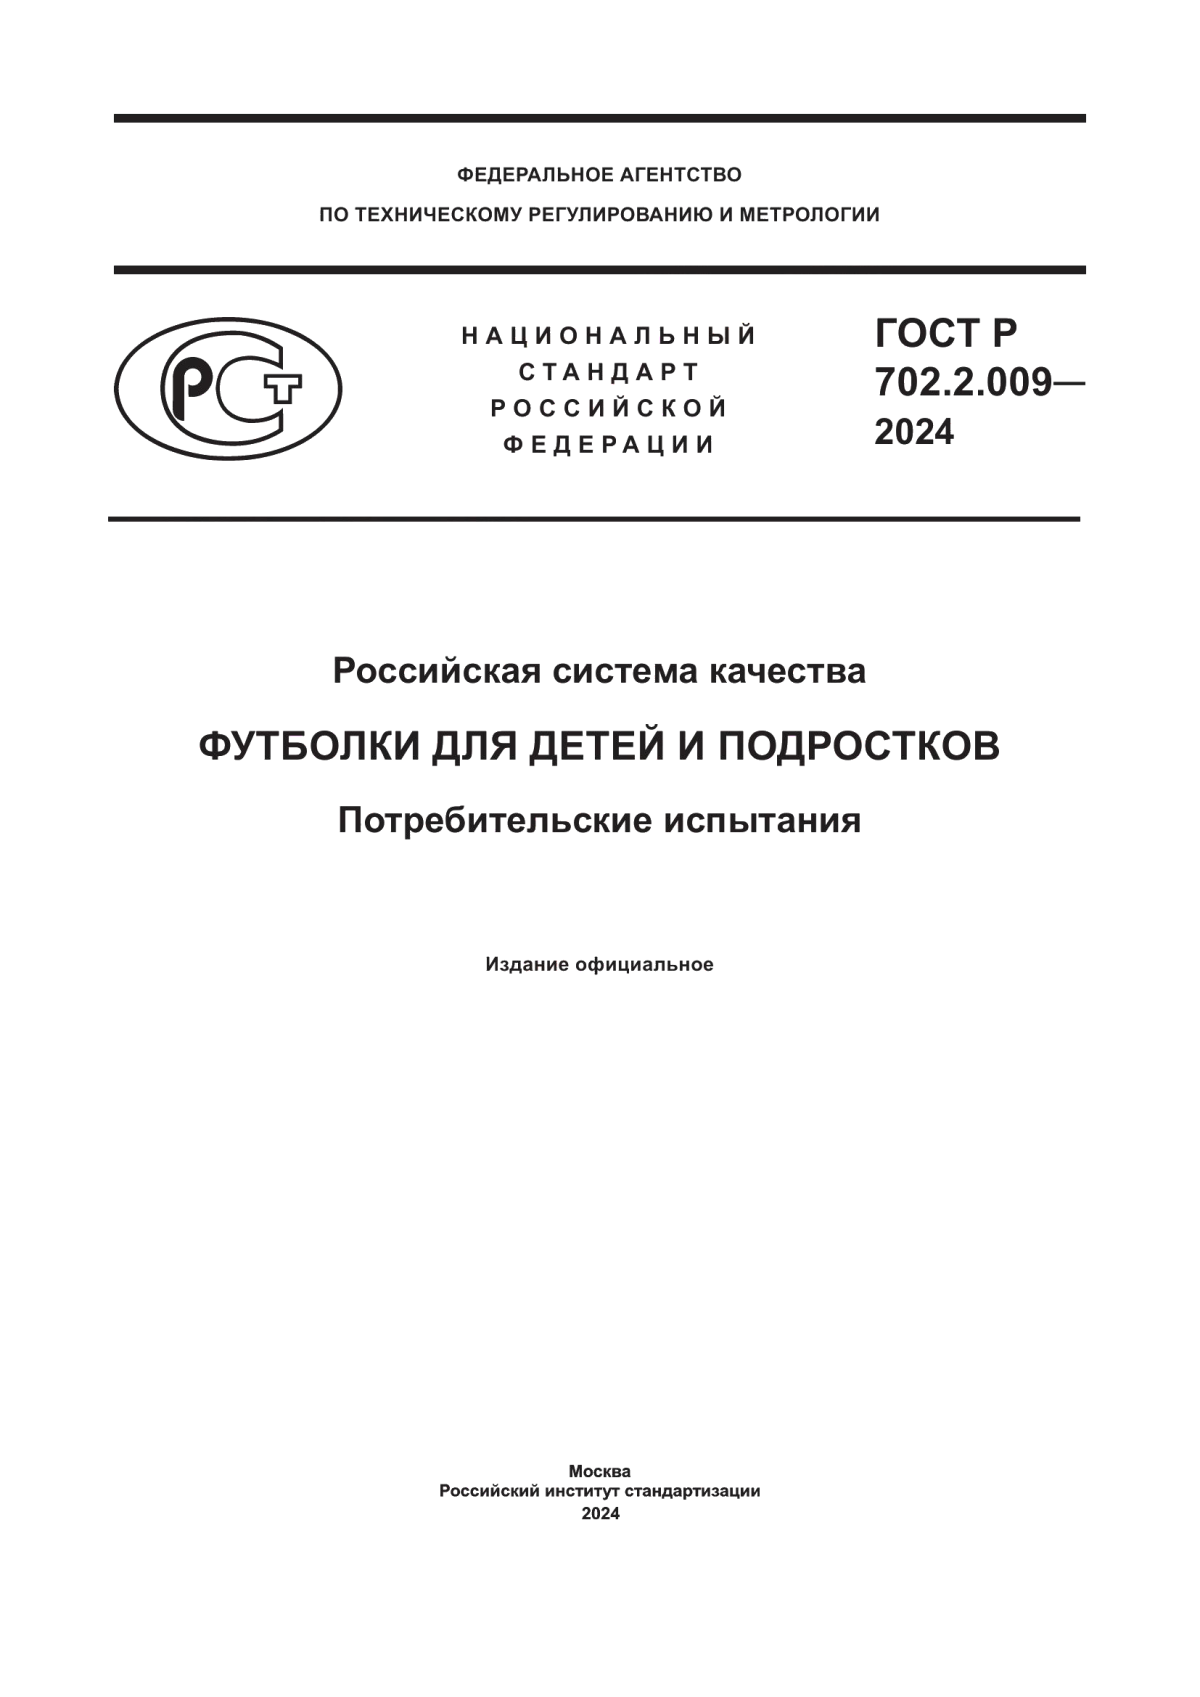 ГОСТ Р 702.2.009-2024 Российская система качества. Футболки для детей и подростков. Потребительские испытания